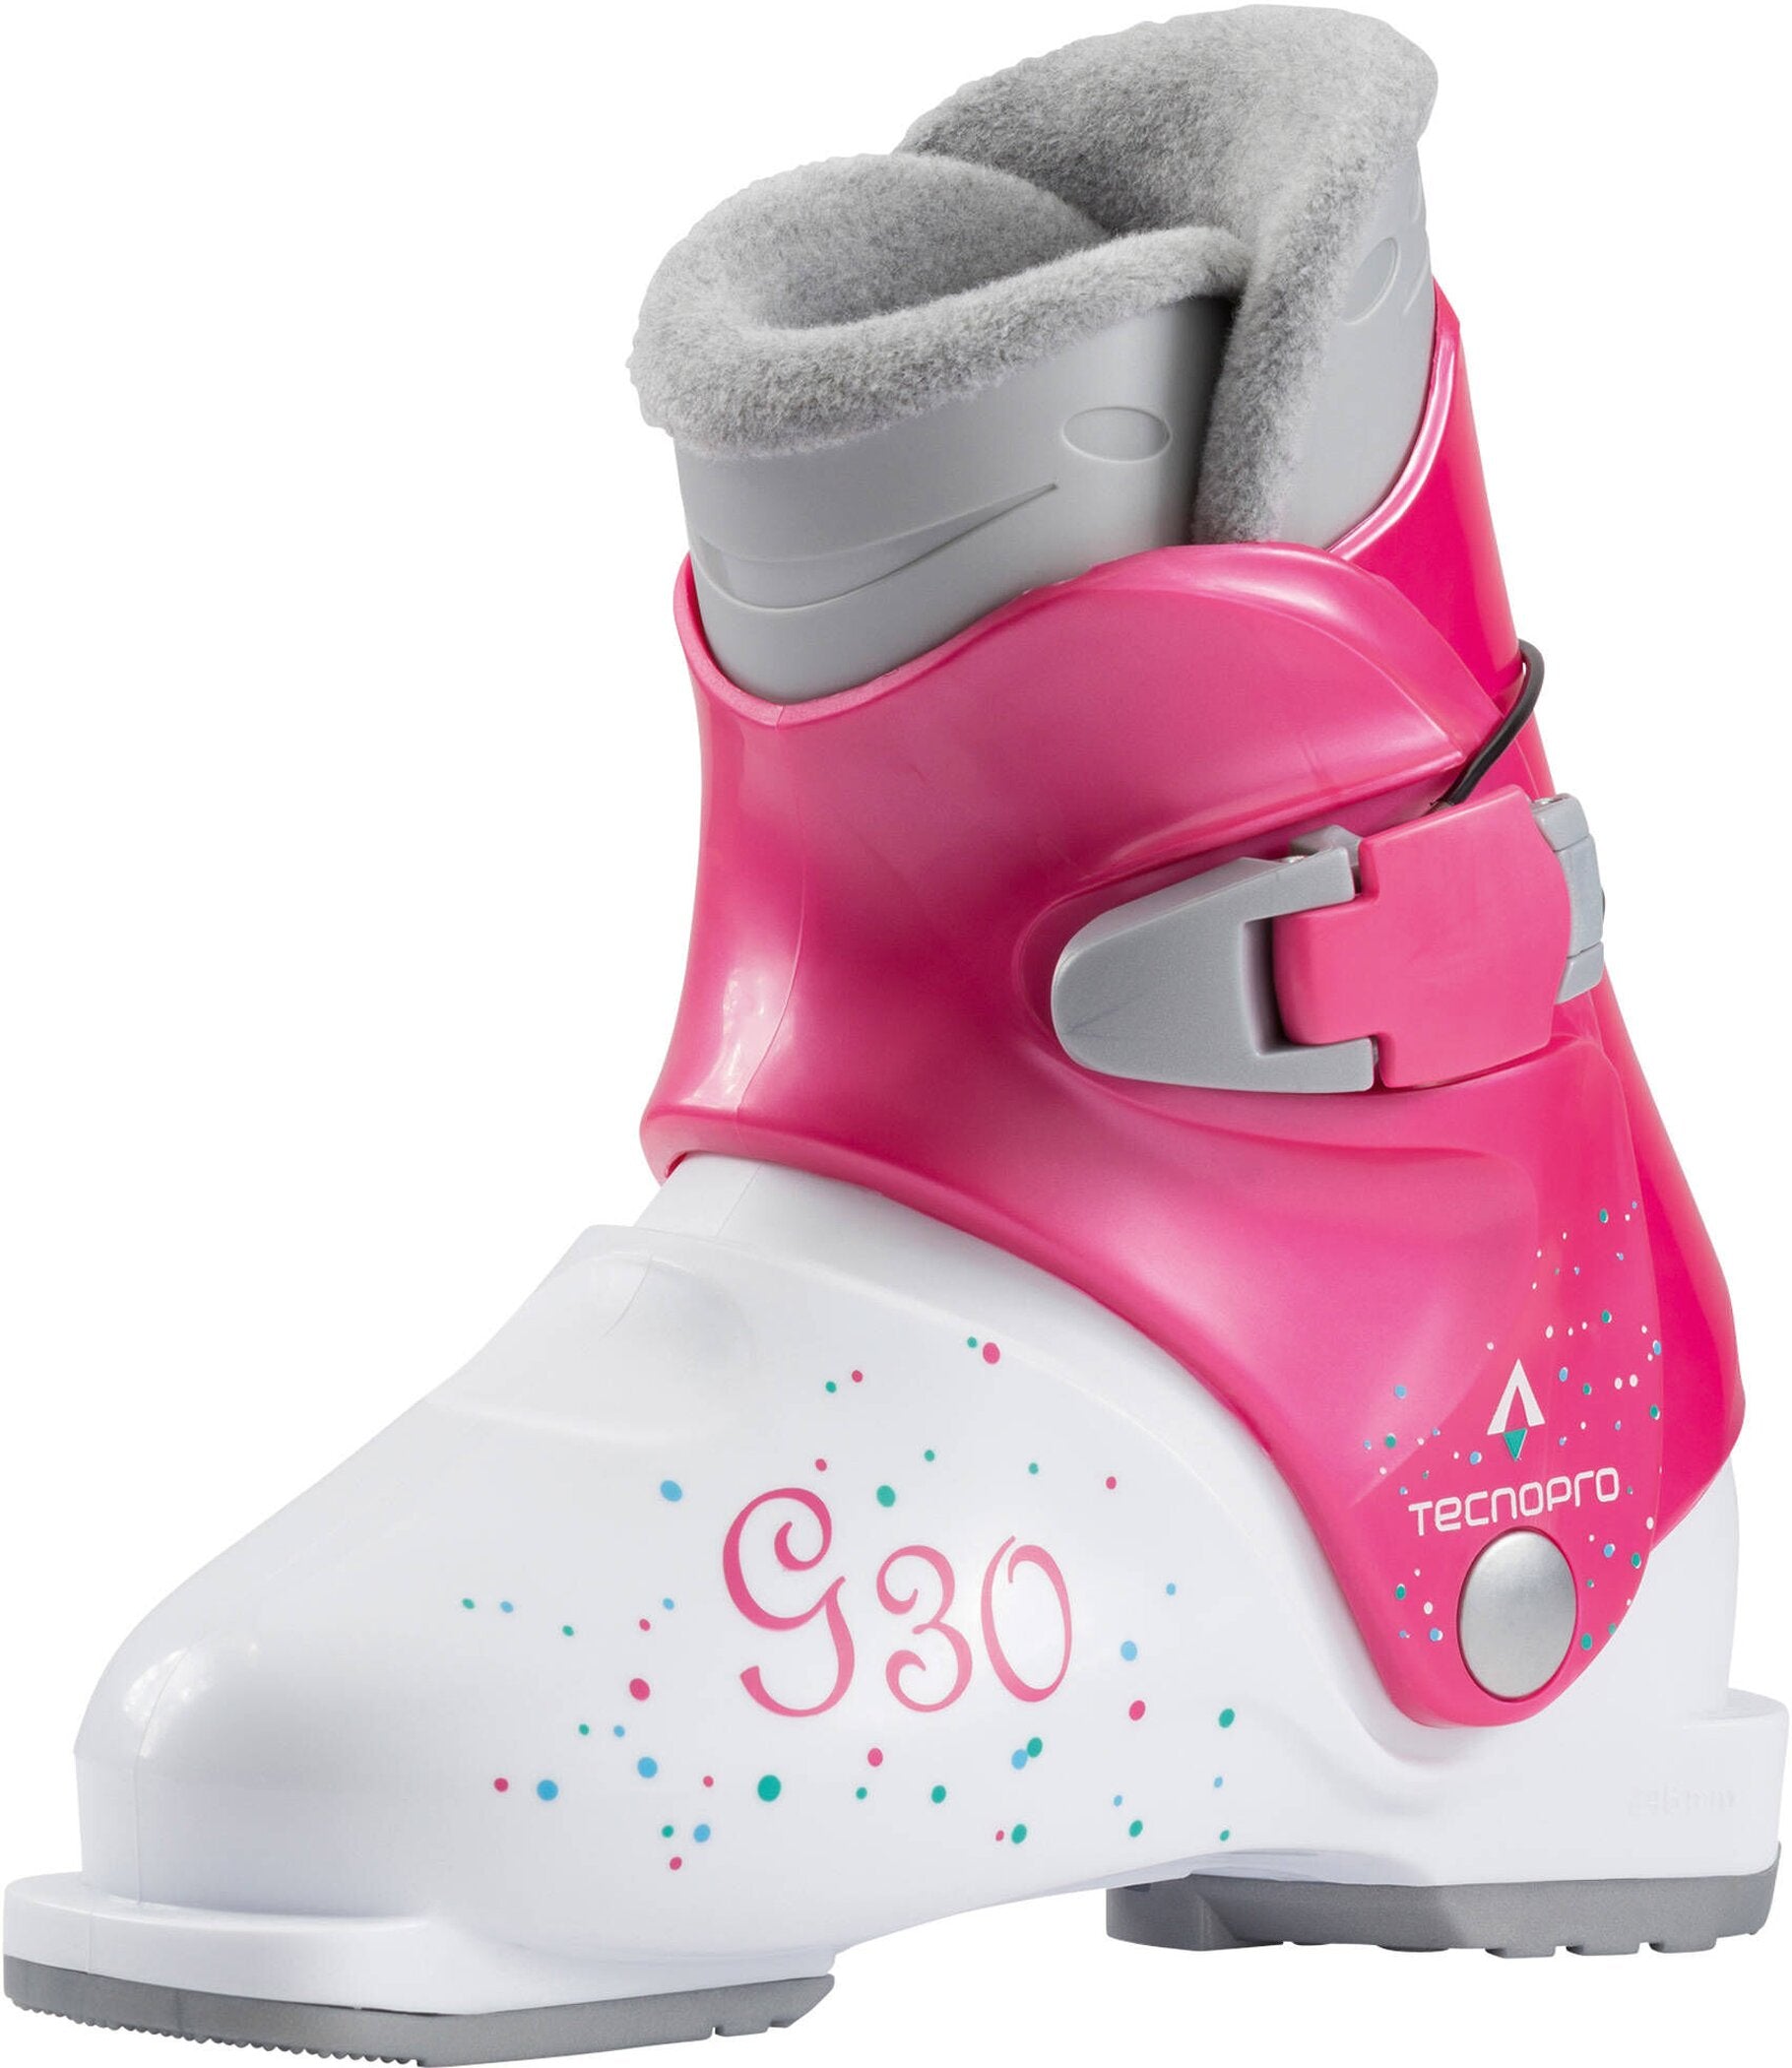 Mädchen Skischuhe G30